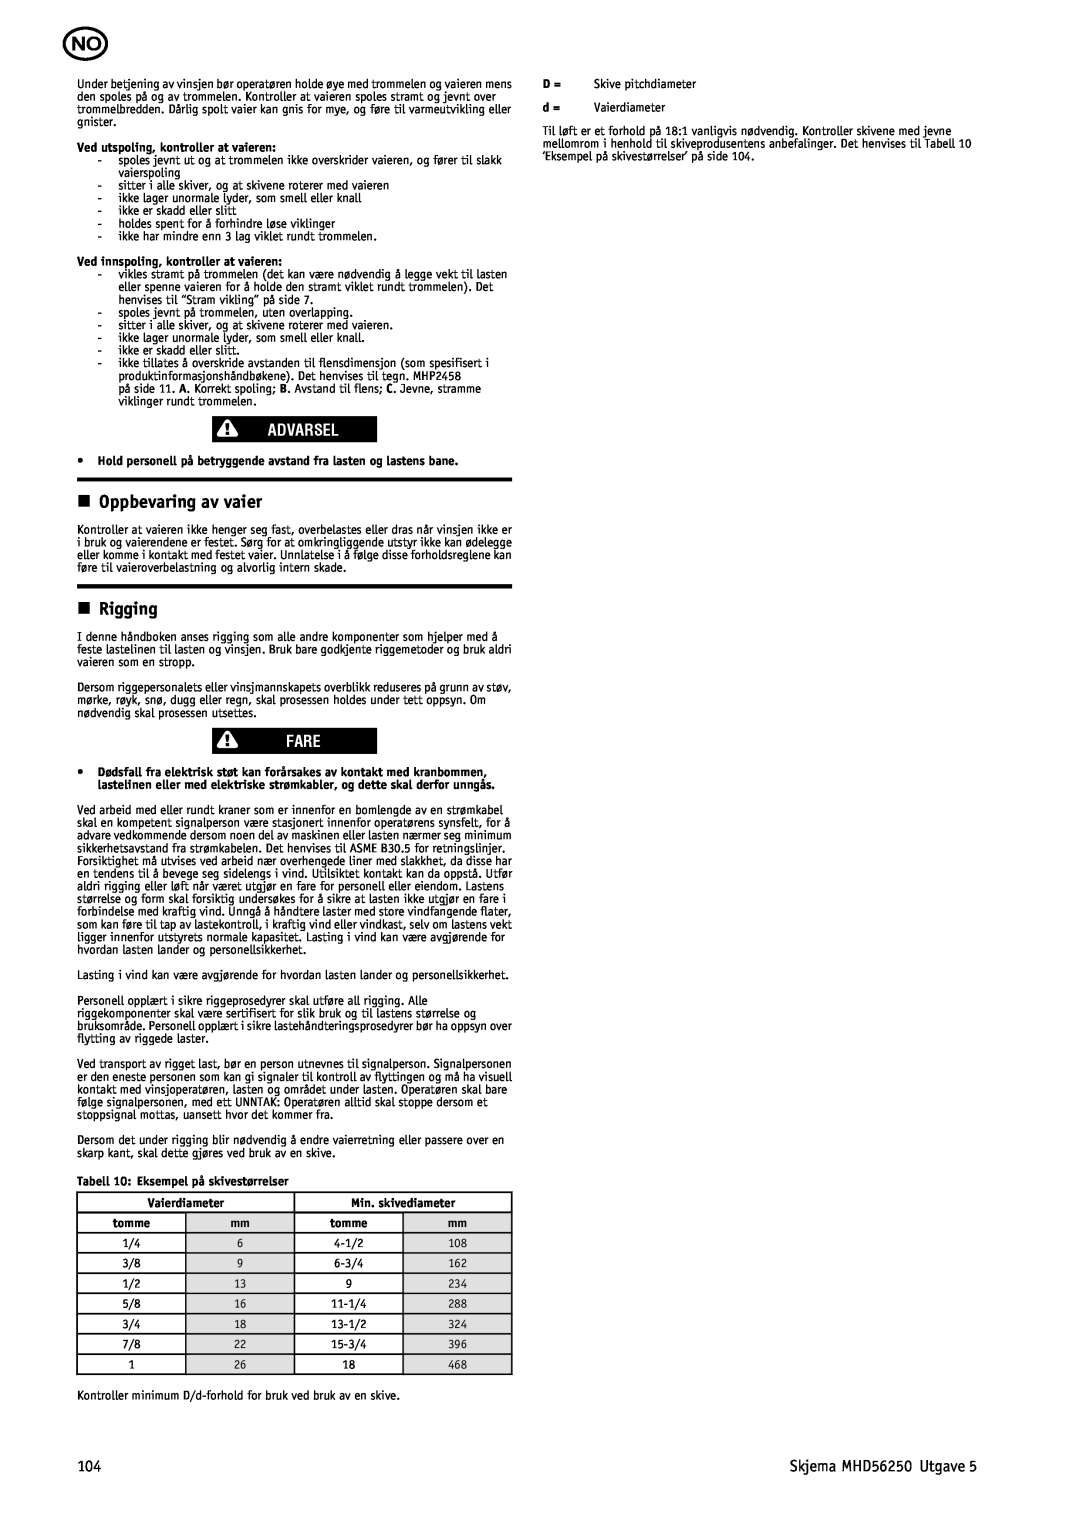 Ingersoll-Rand manual n Oppbevaring av vaier, n Rigging, Advarsel, Fare, Skjema MHD56250 Utgave 